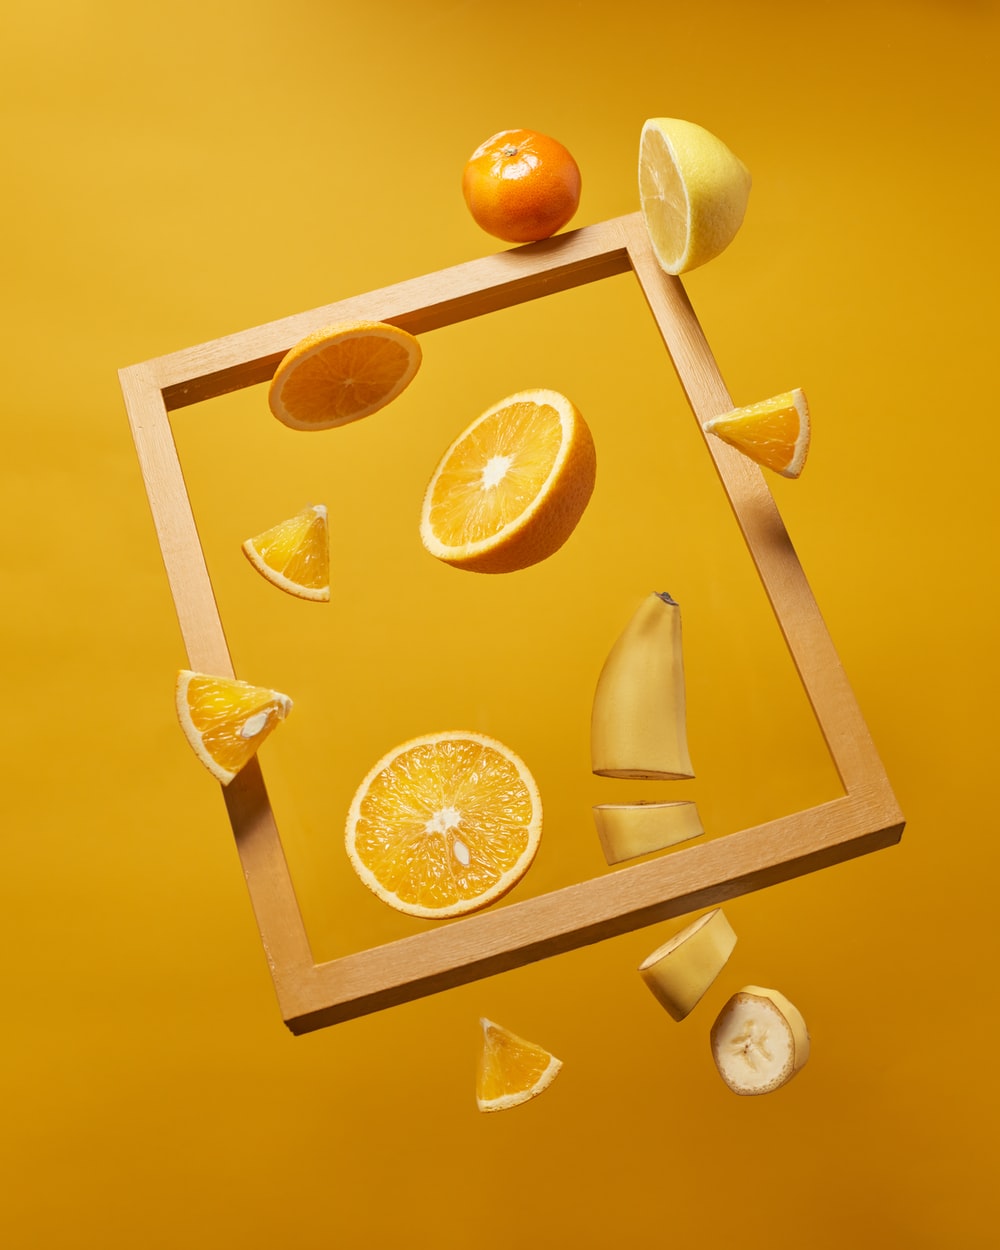 橙子橘子香蕉的相框食物图片素材